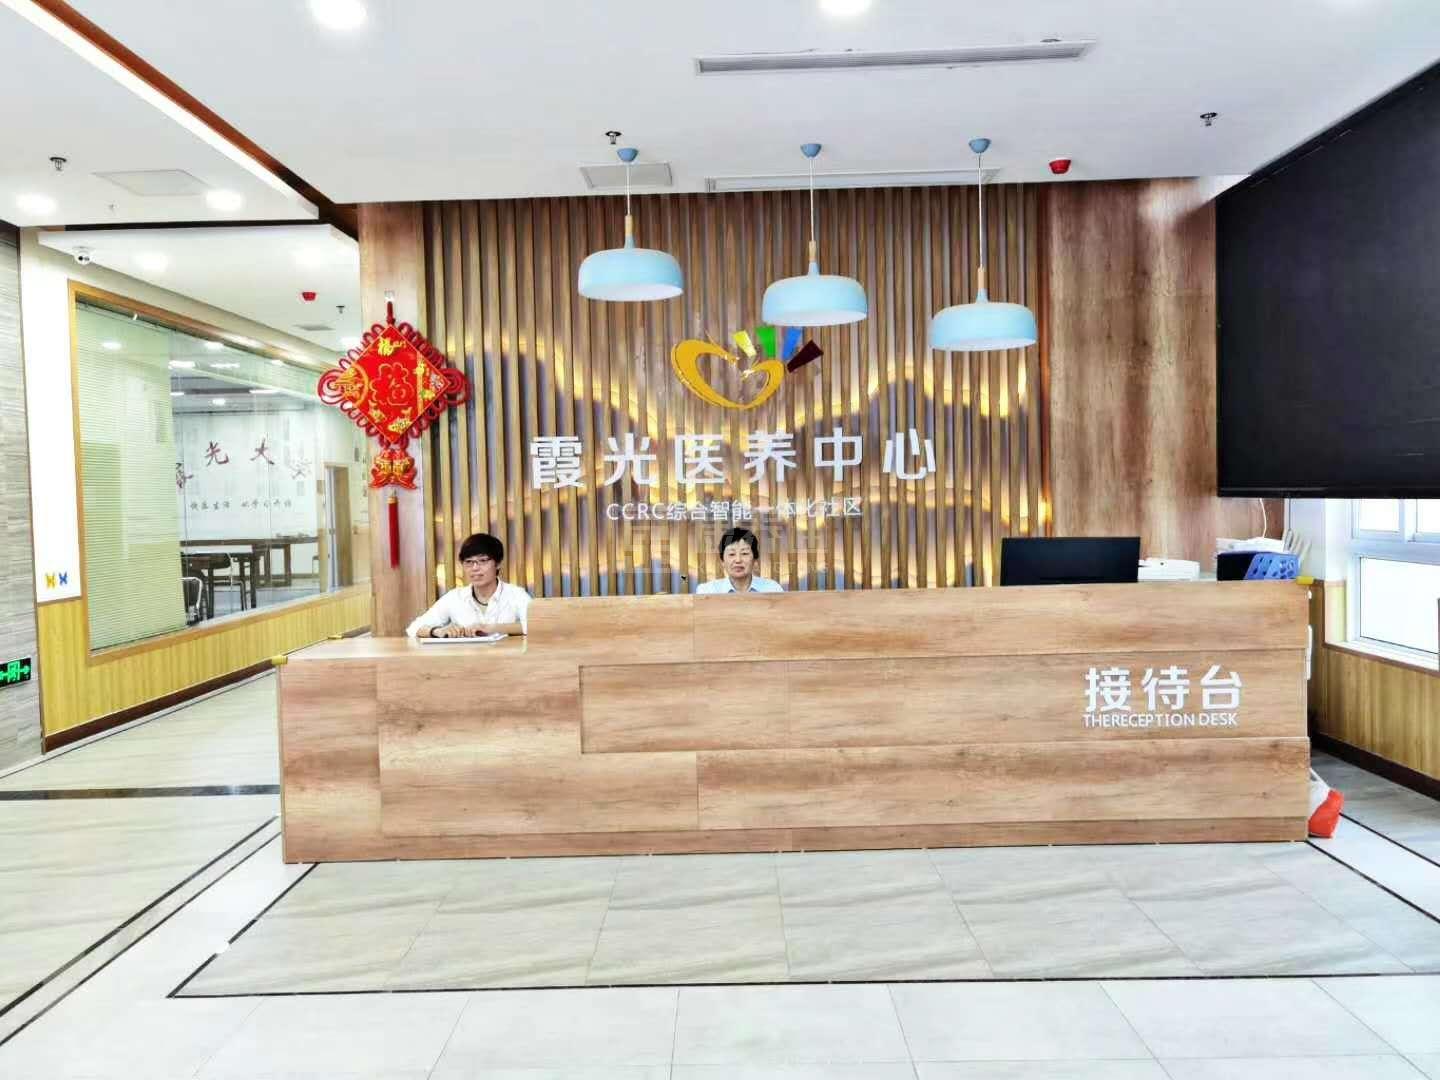 临泉县霞光居民服务管理有限公司服务项目图2亦动亦静、亦新亦旧